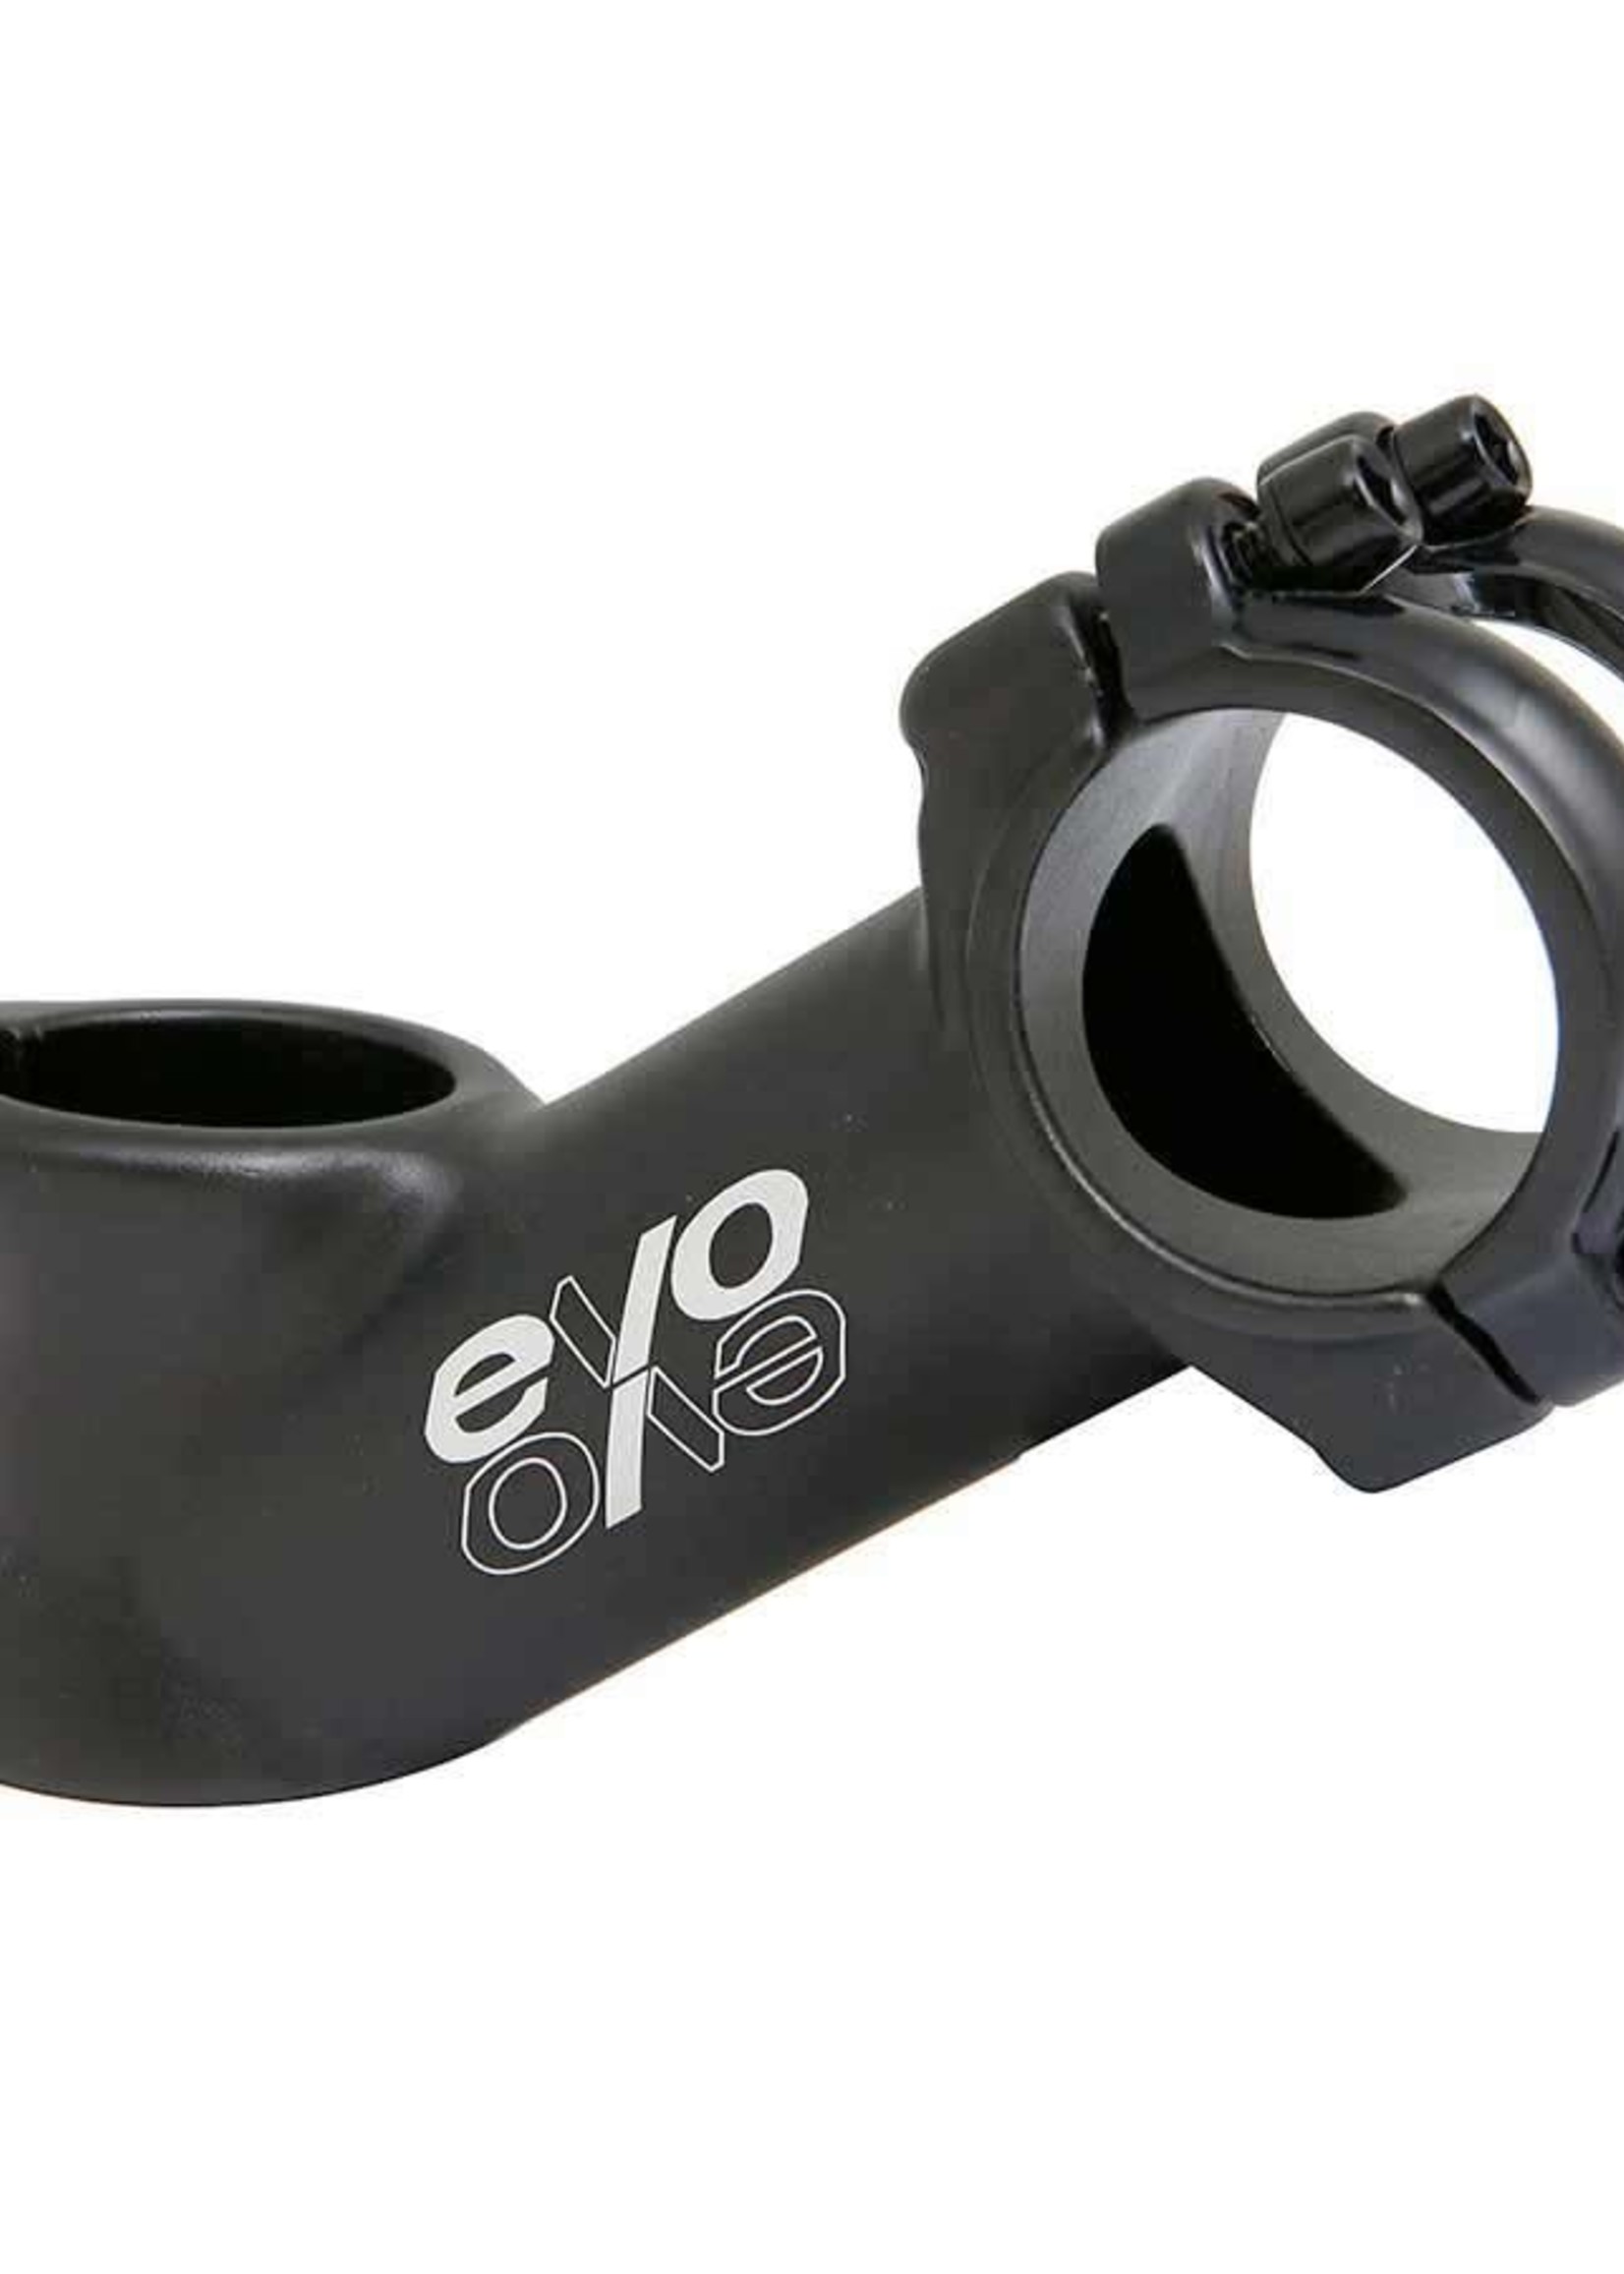 EVO E-Tec OS, Stem, 28.6mm, 70mm, ±35°, 31.8mm, Black